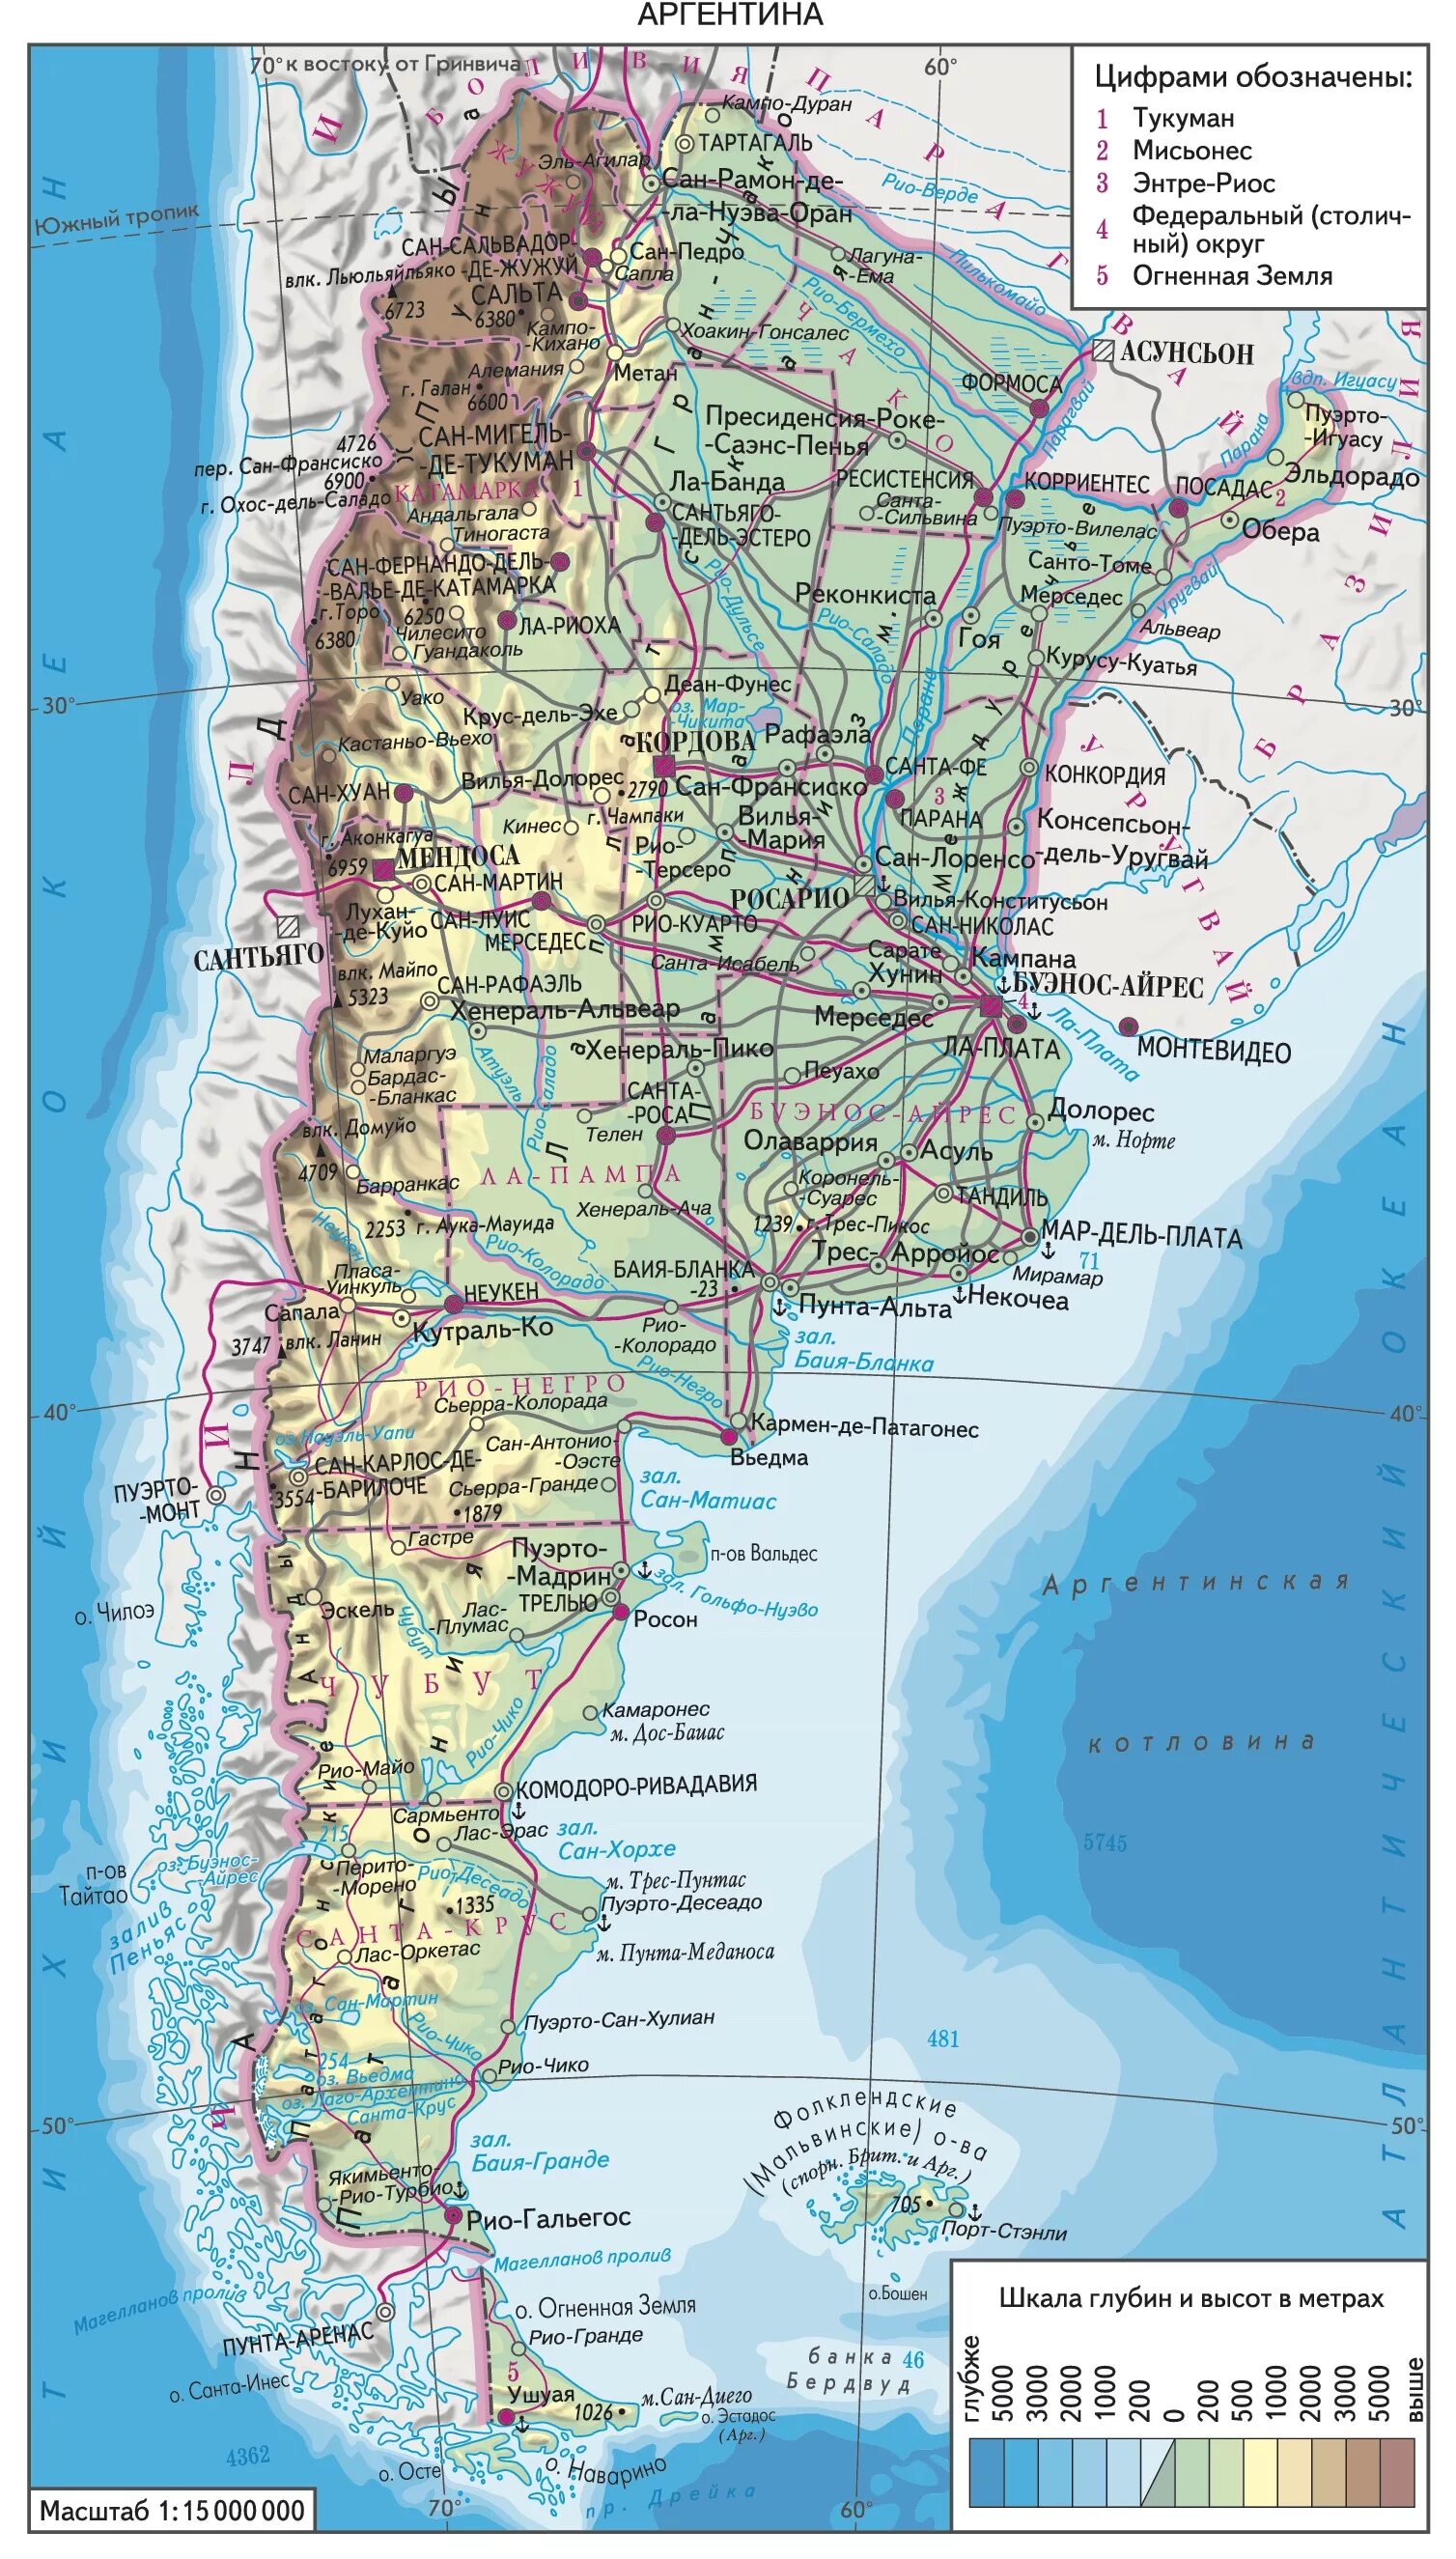 Аргентина физ карта. Подробная карта Аргентины. Географическая карта Аргентины на русском языке. Физическая карта Аргентины.